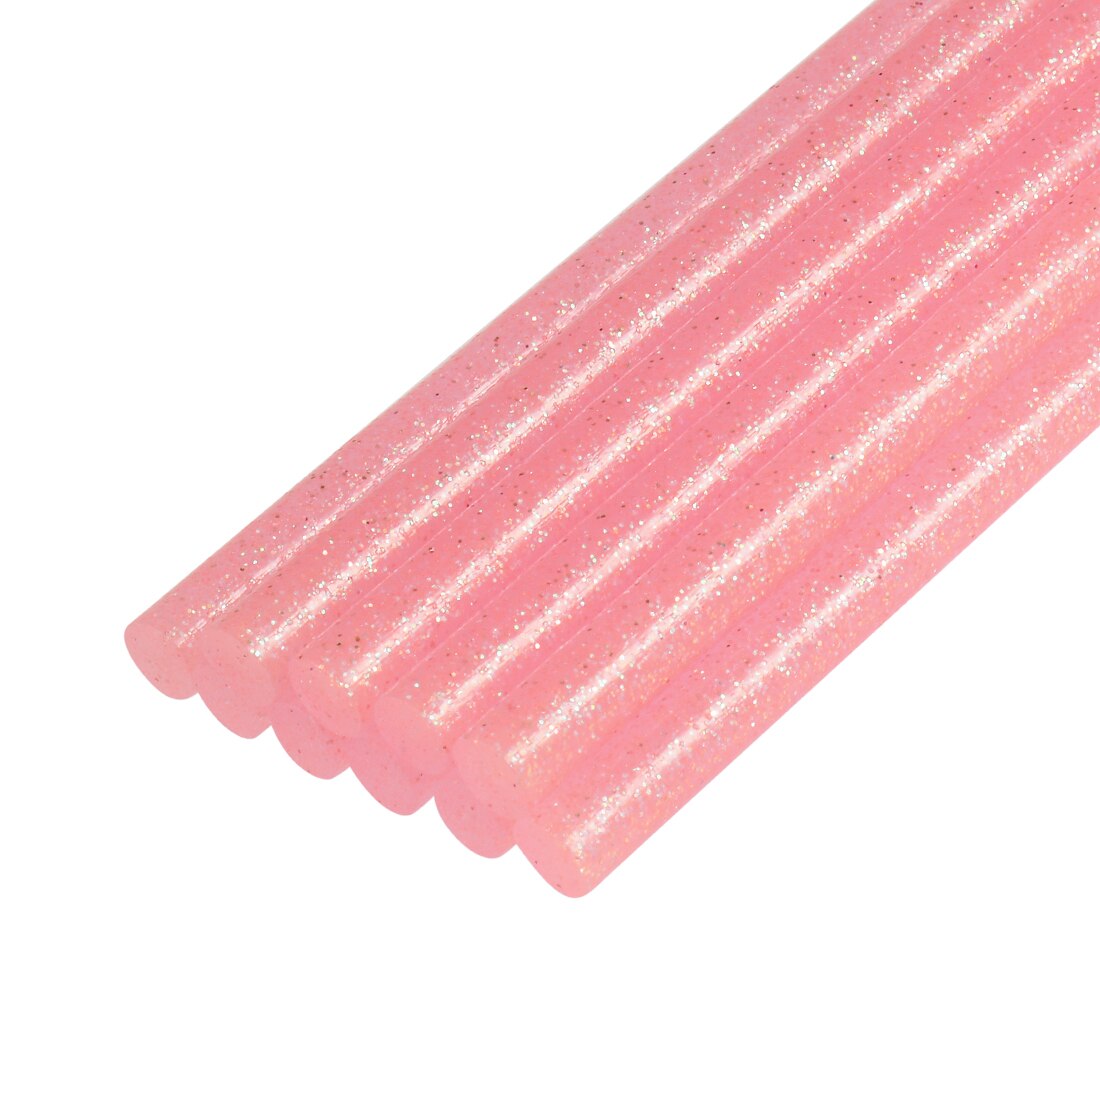 Uxcell Mini Glue Sticks Voor Lijmpistool 0.27-Inch X 4-Inch Roze Glitter 10Pcs